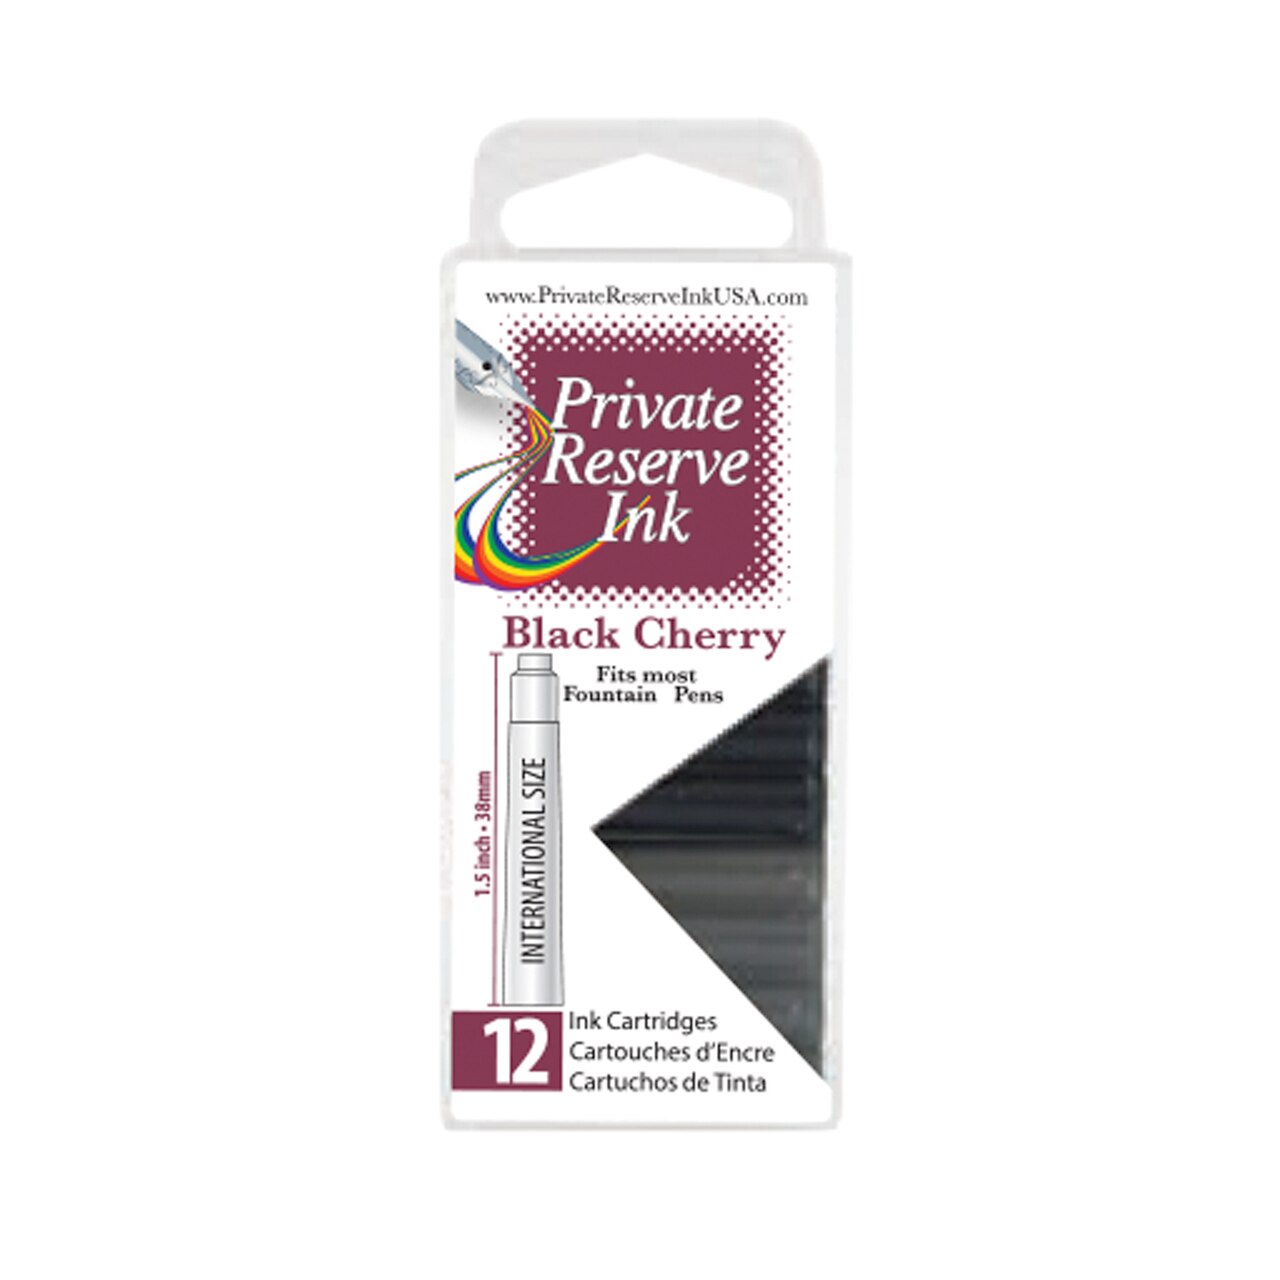 Private Reserve Black Cherry